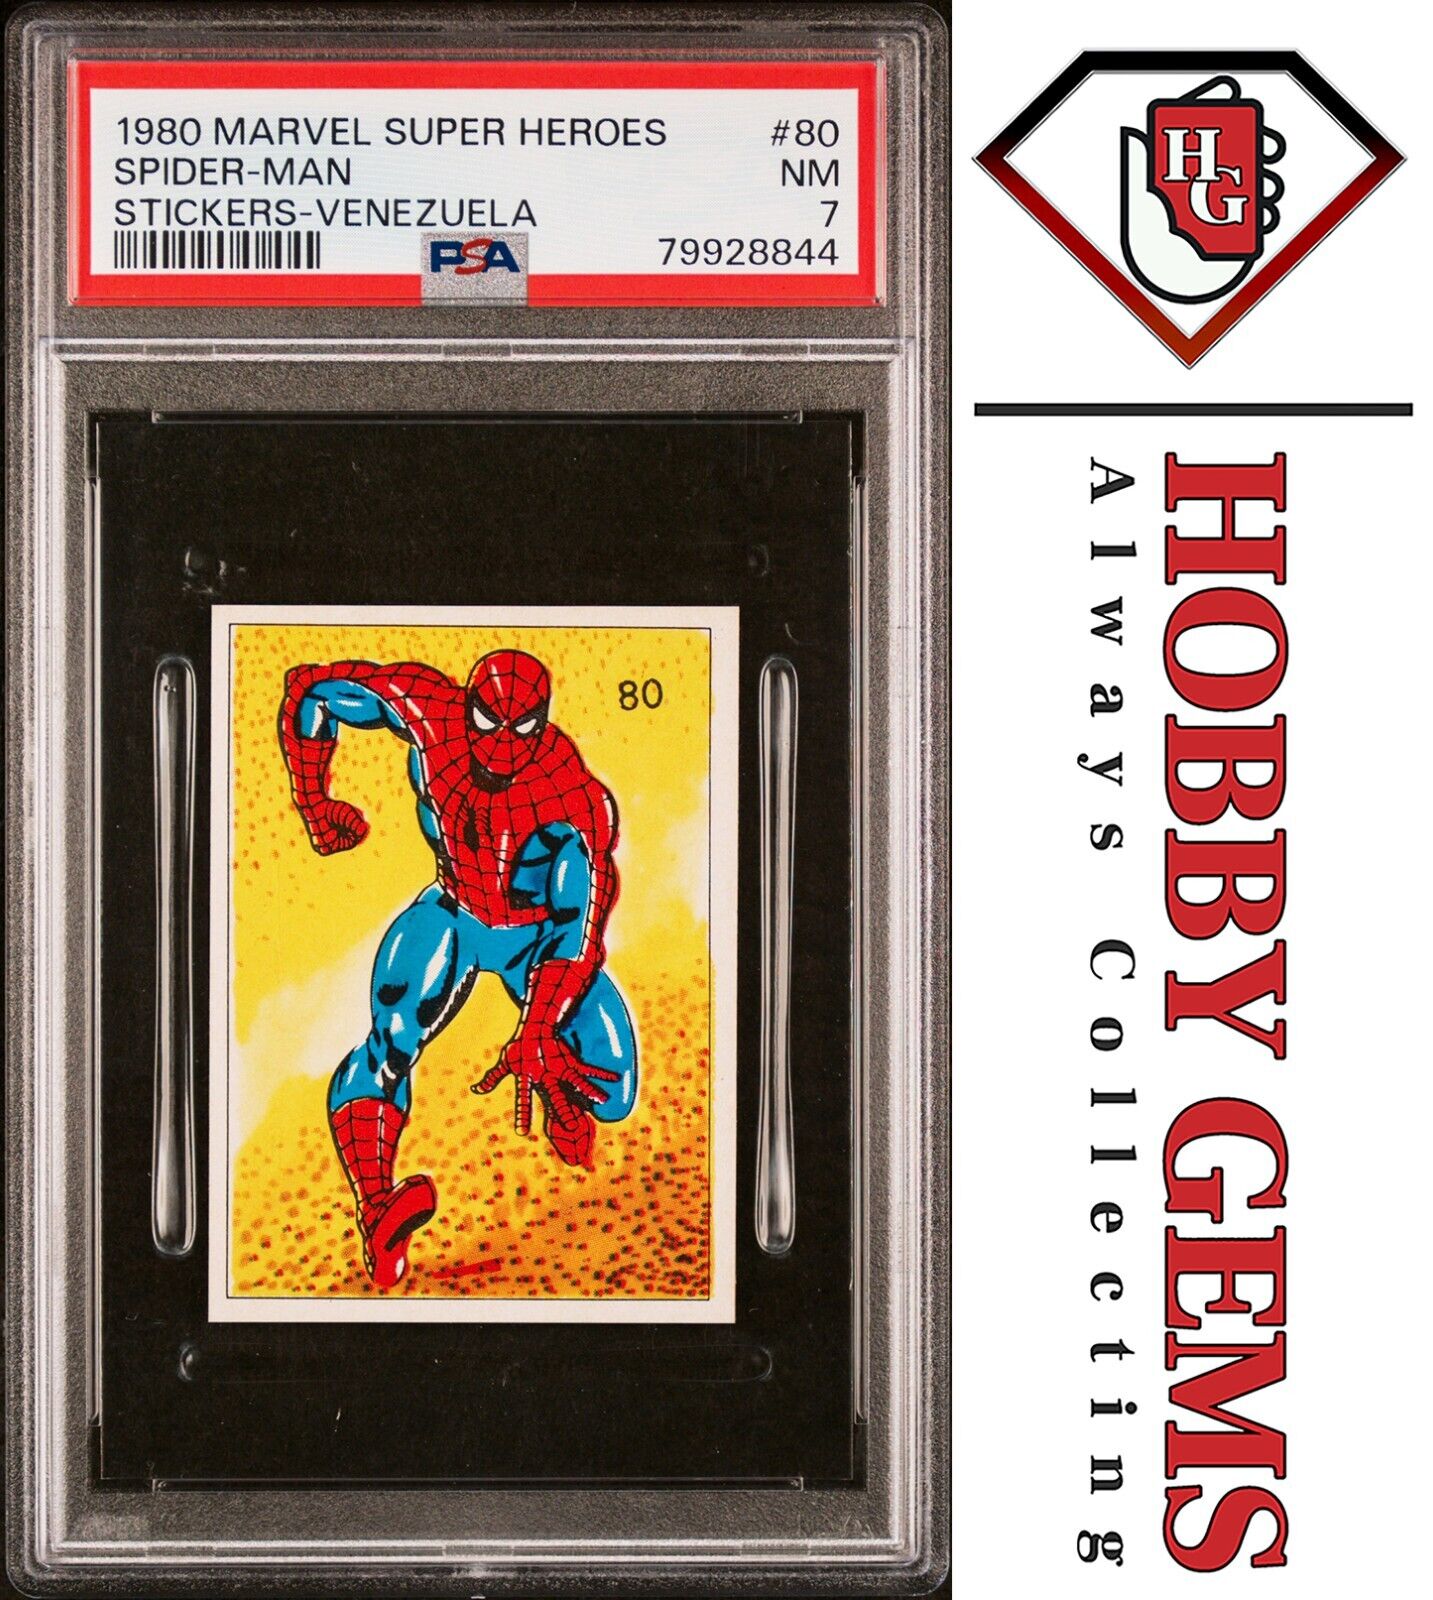 SPIDER-MAN PSA 7 1980 Marvel Super Heroes Sticker Venezuela #80